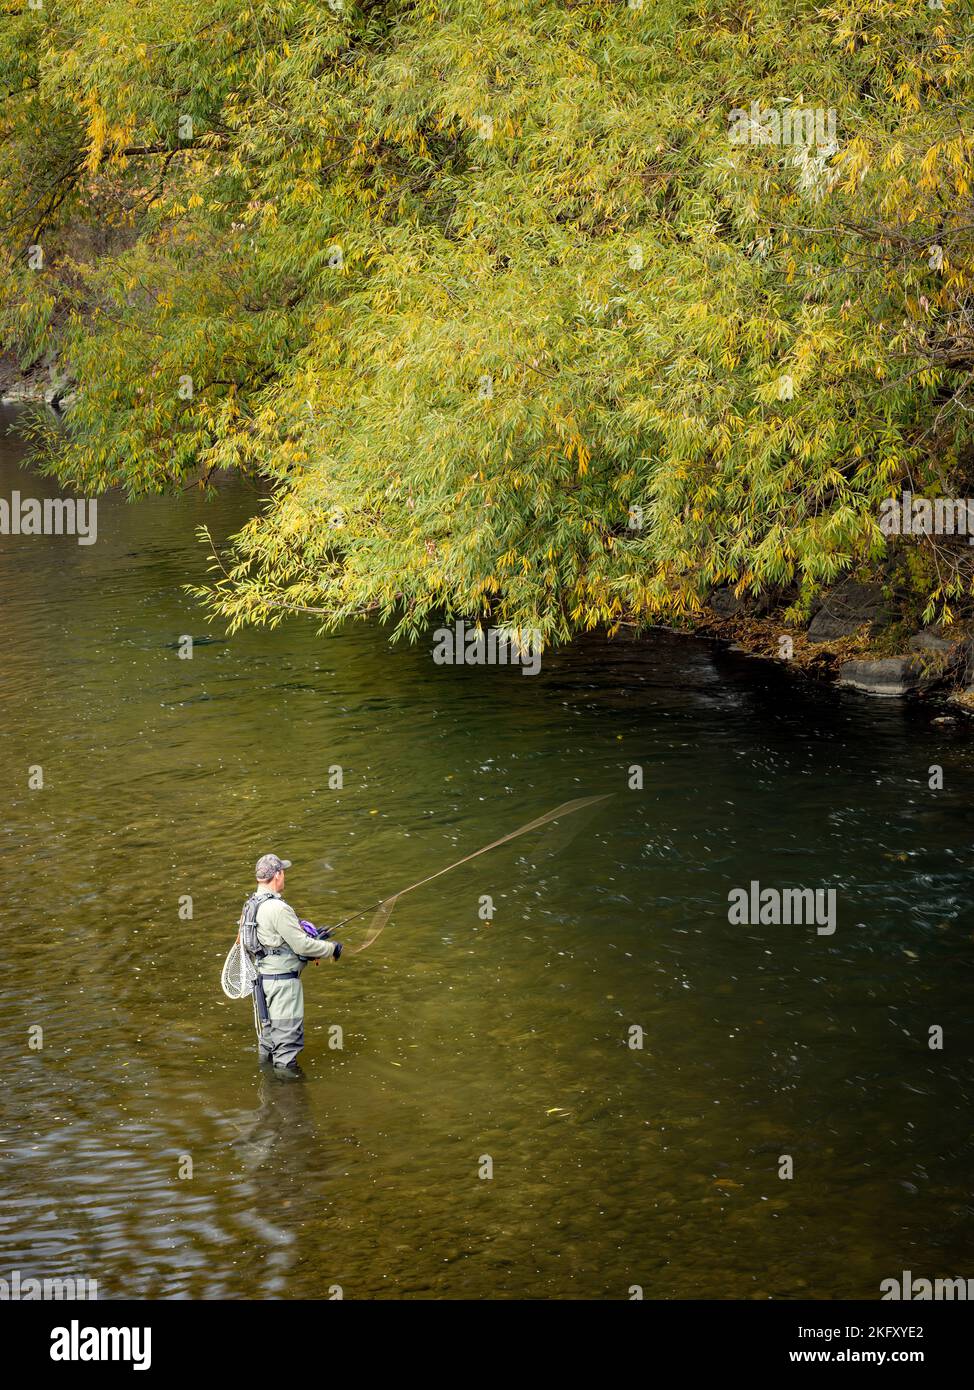 Chute des arbres et de la rivière Boise avec un pêcheur Banque D'Images